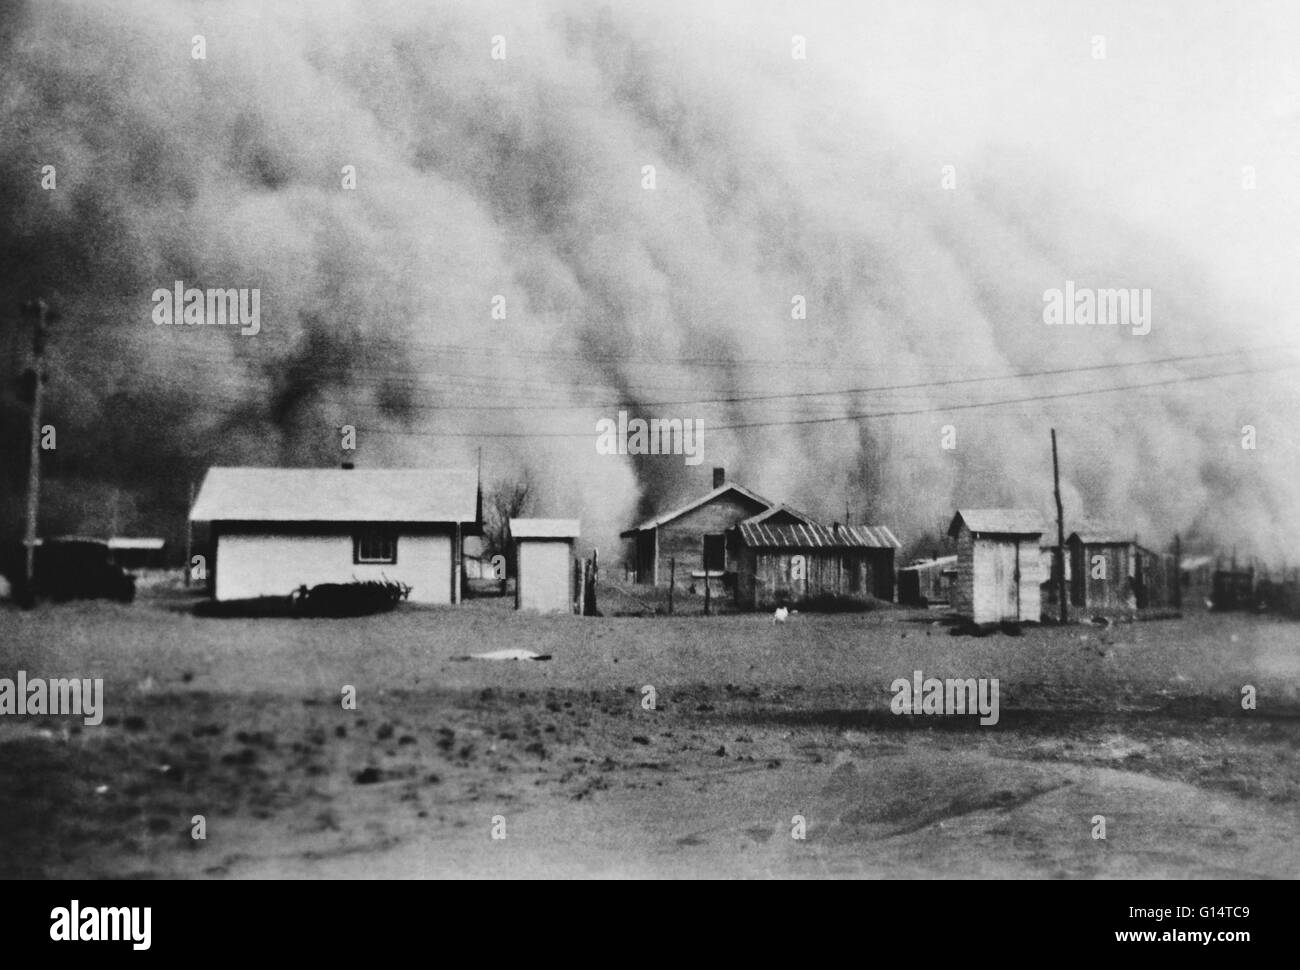 Riesiger Sandsturm trifft Kansas während der Dust Bowl, eine Landwirtschaft, ökologische und wirtschaftliche Katastrophe in der Great Plains-Region von Nord-Amerika in den 1930er Jahren. Stockfoto